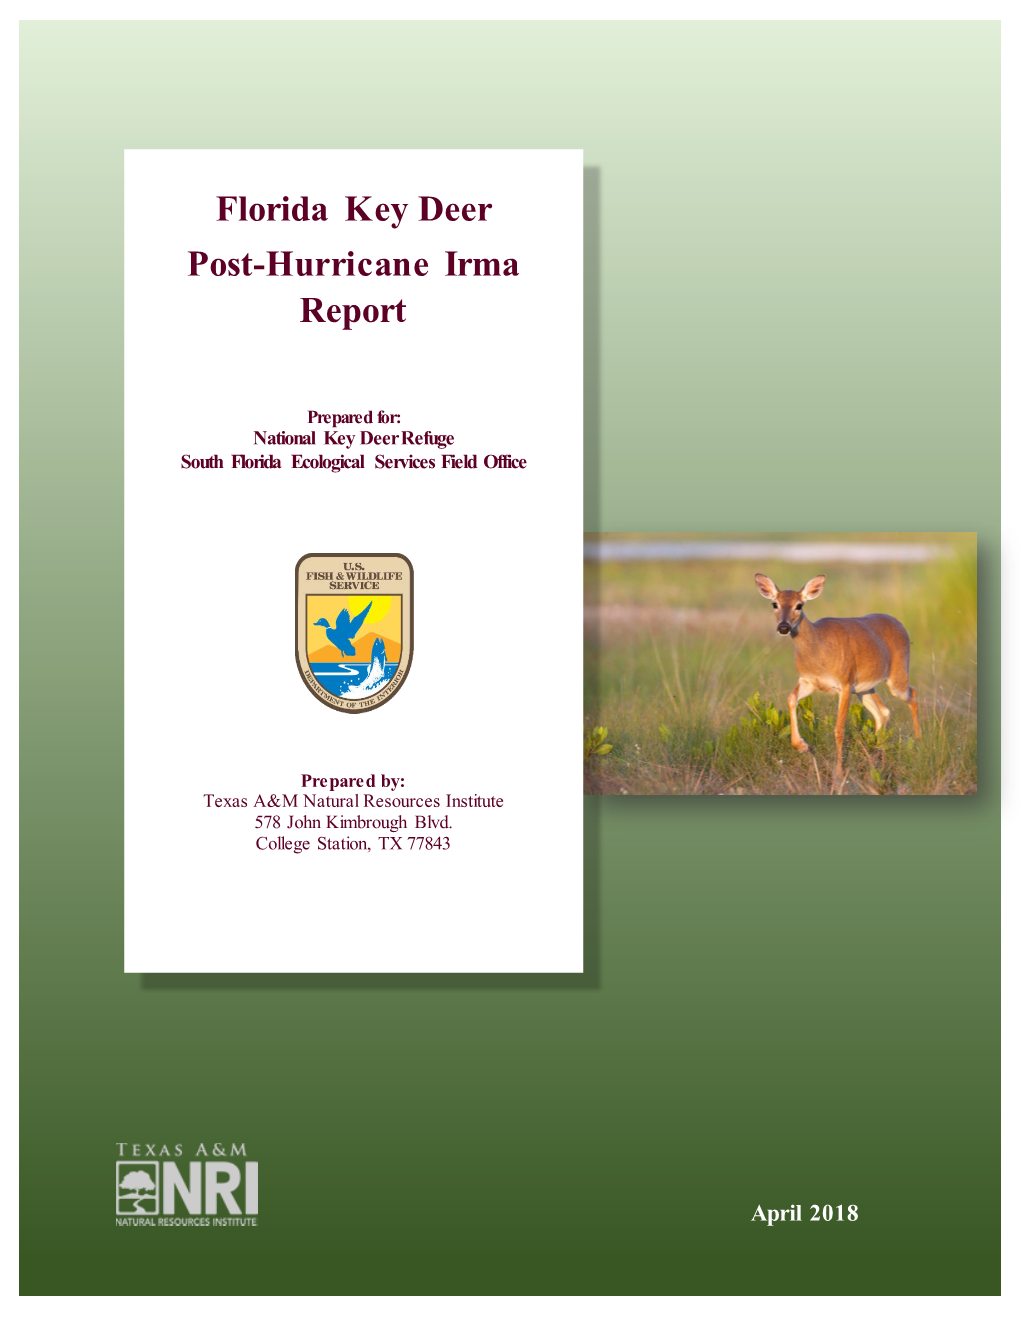 Florida Key Deer Post-Hurricane Irma Report